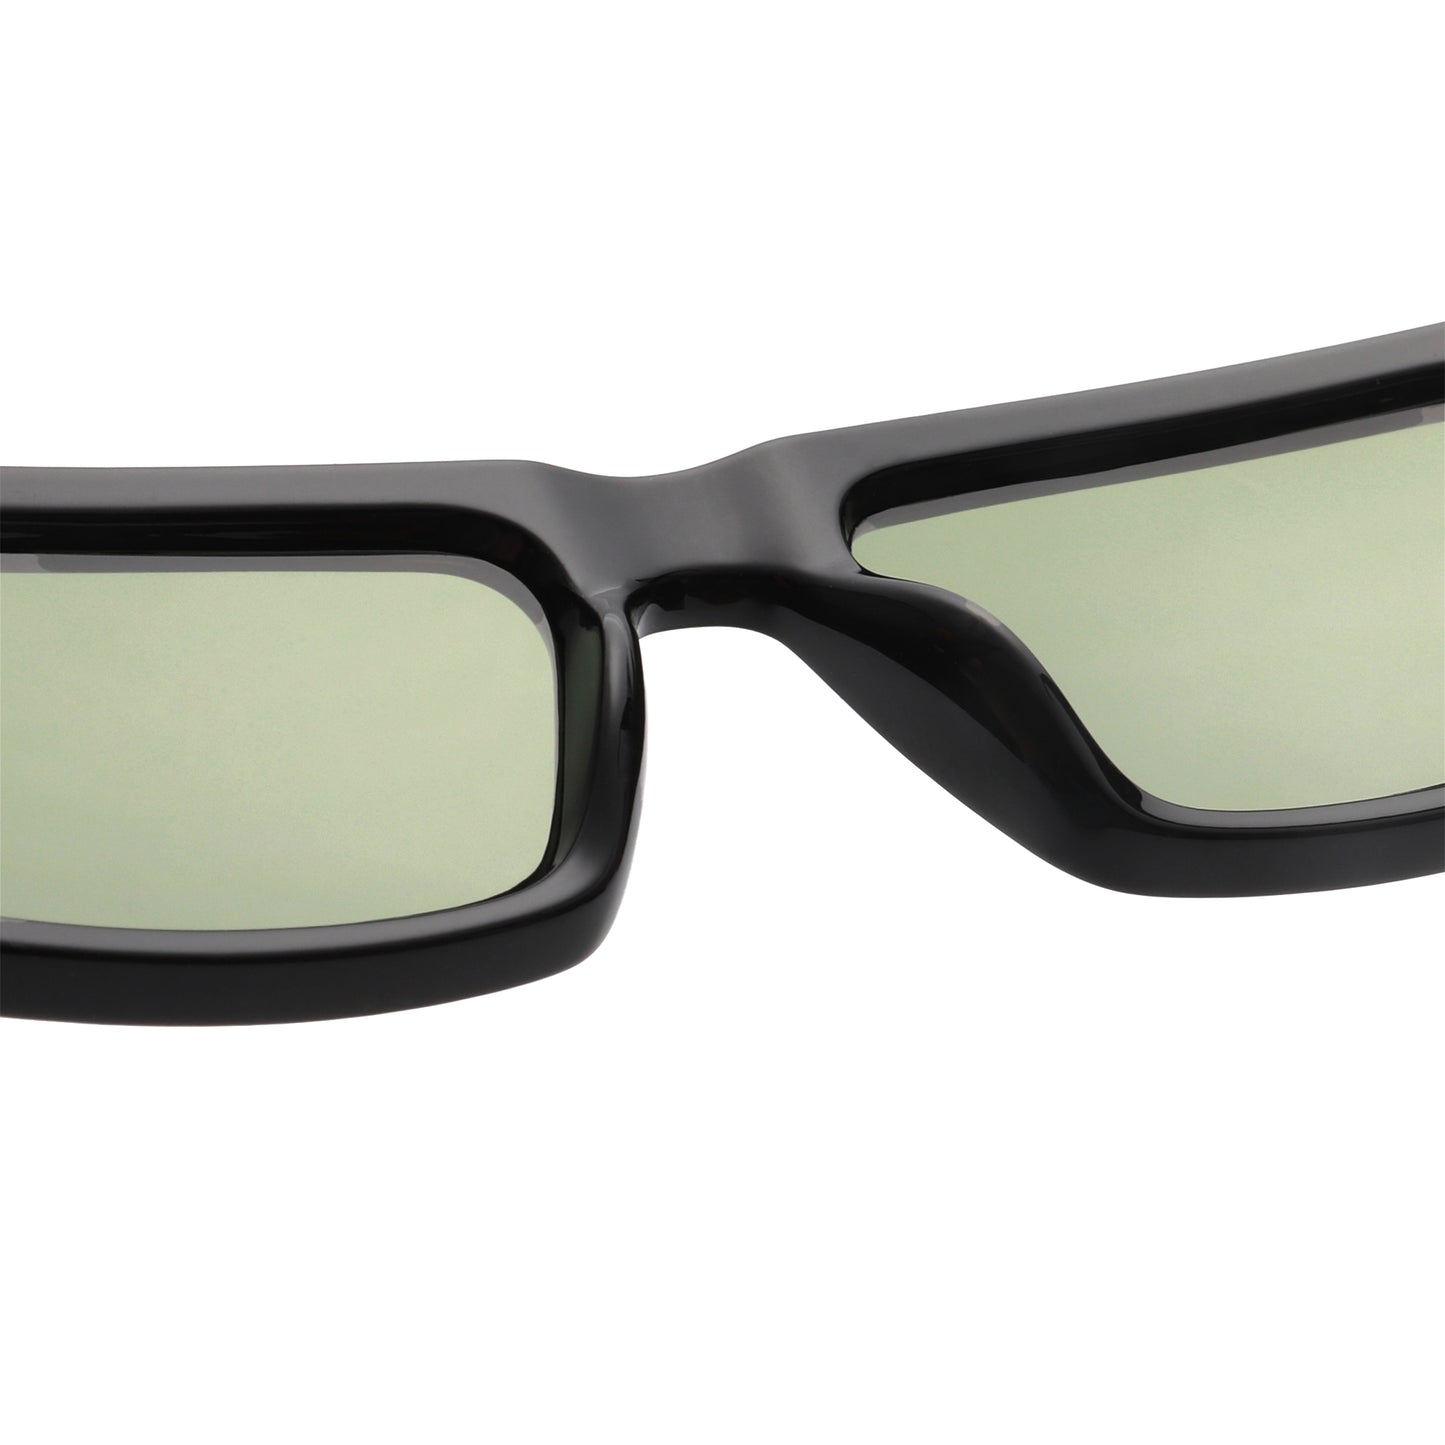 A.Kjaerbede Fame Sunglasses in Black color